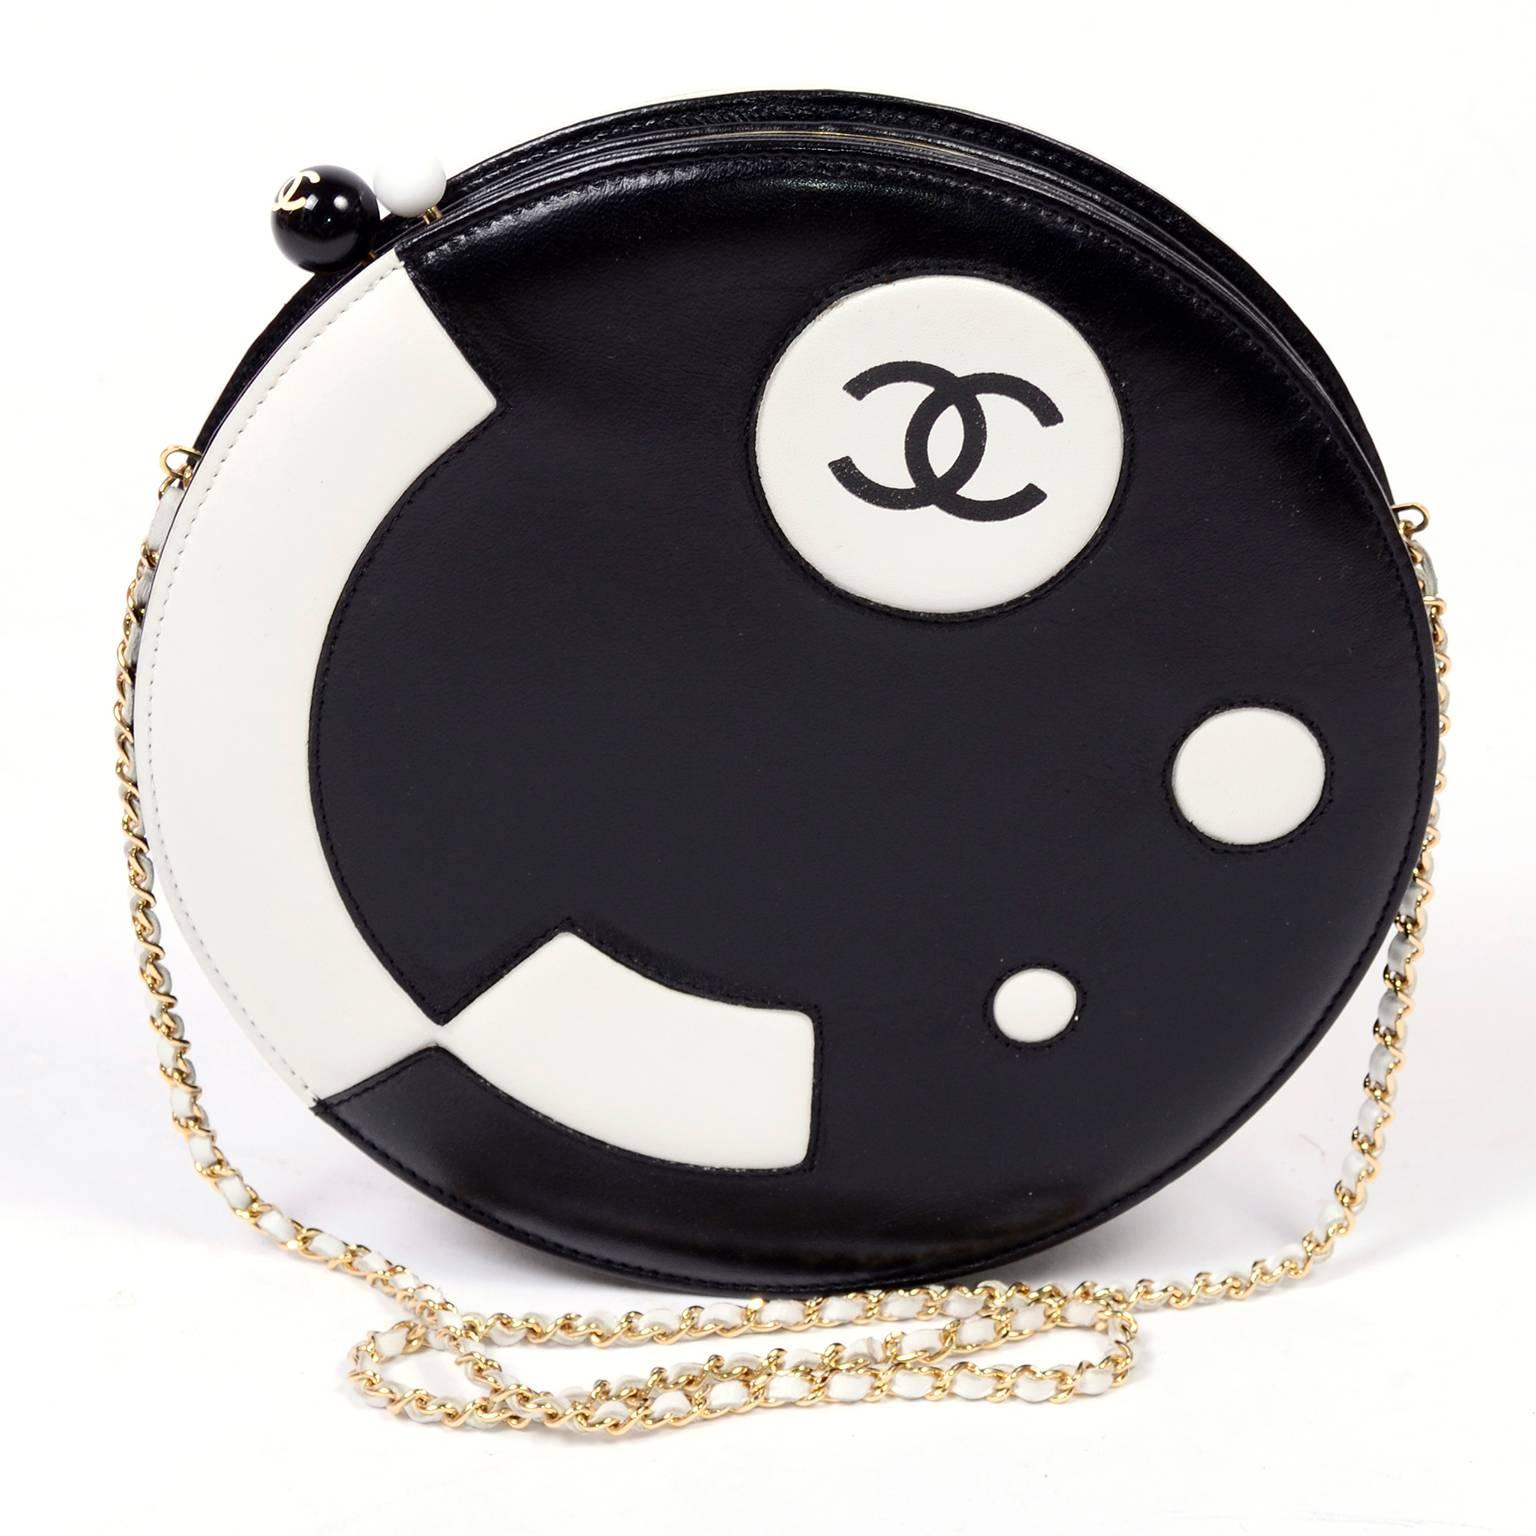 Diese wunderschöne Chanel-Umhängetasche ist atemberaubend mit ihrem modernen futuristischen Muster und ihrer runden Form.  Diese kontrastreiche runde schwarze und weiße Lammlederhandtasche stammt aus der Chanel-Kollektion 2003-2004. Sie können diese